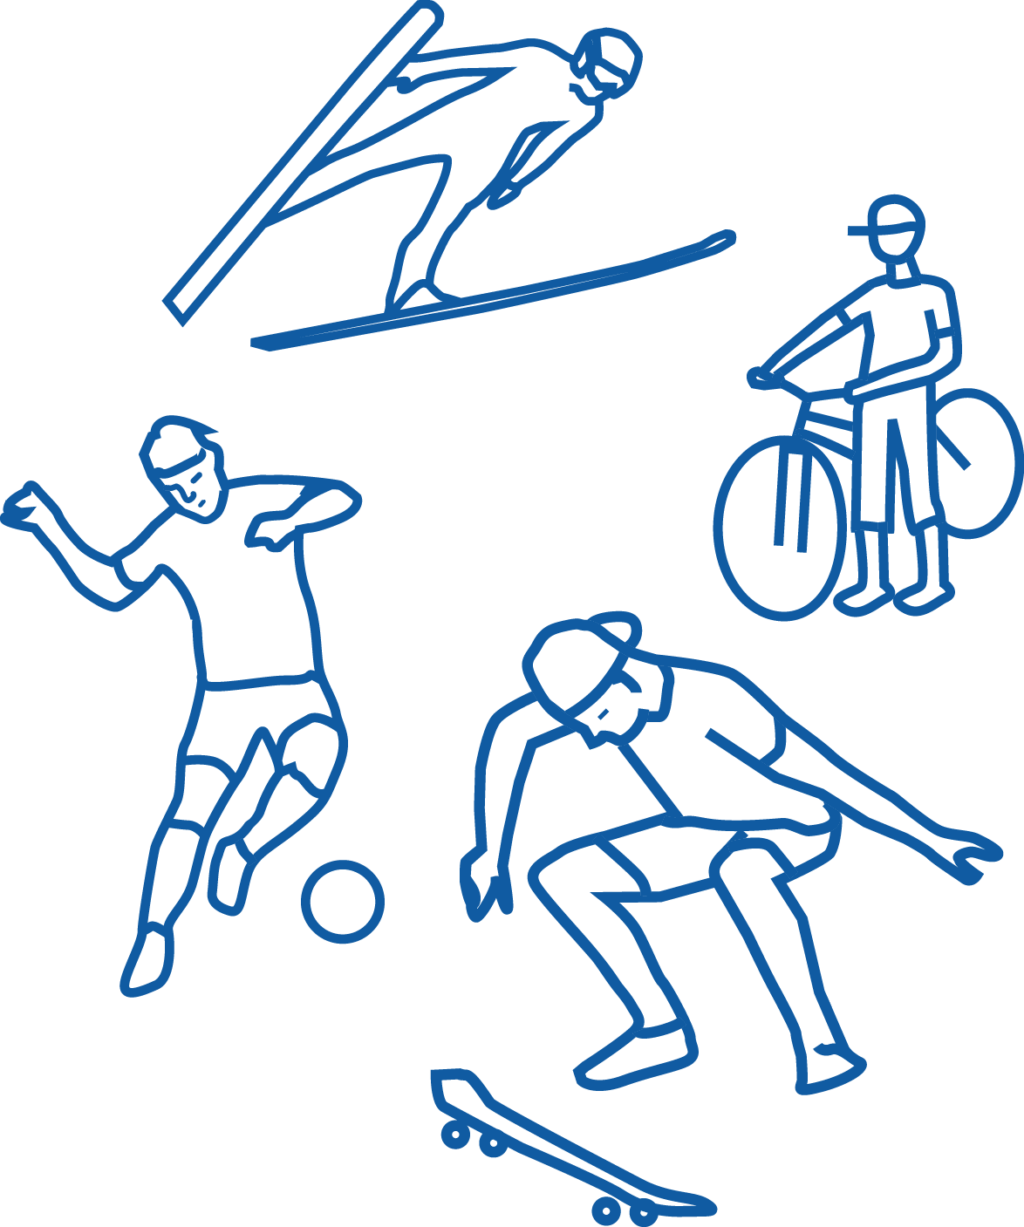 Piirroskuvat mäkihyppääjästä, pyöräilijästä, jalkapalloilijasta ja skeittaajasta.